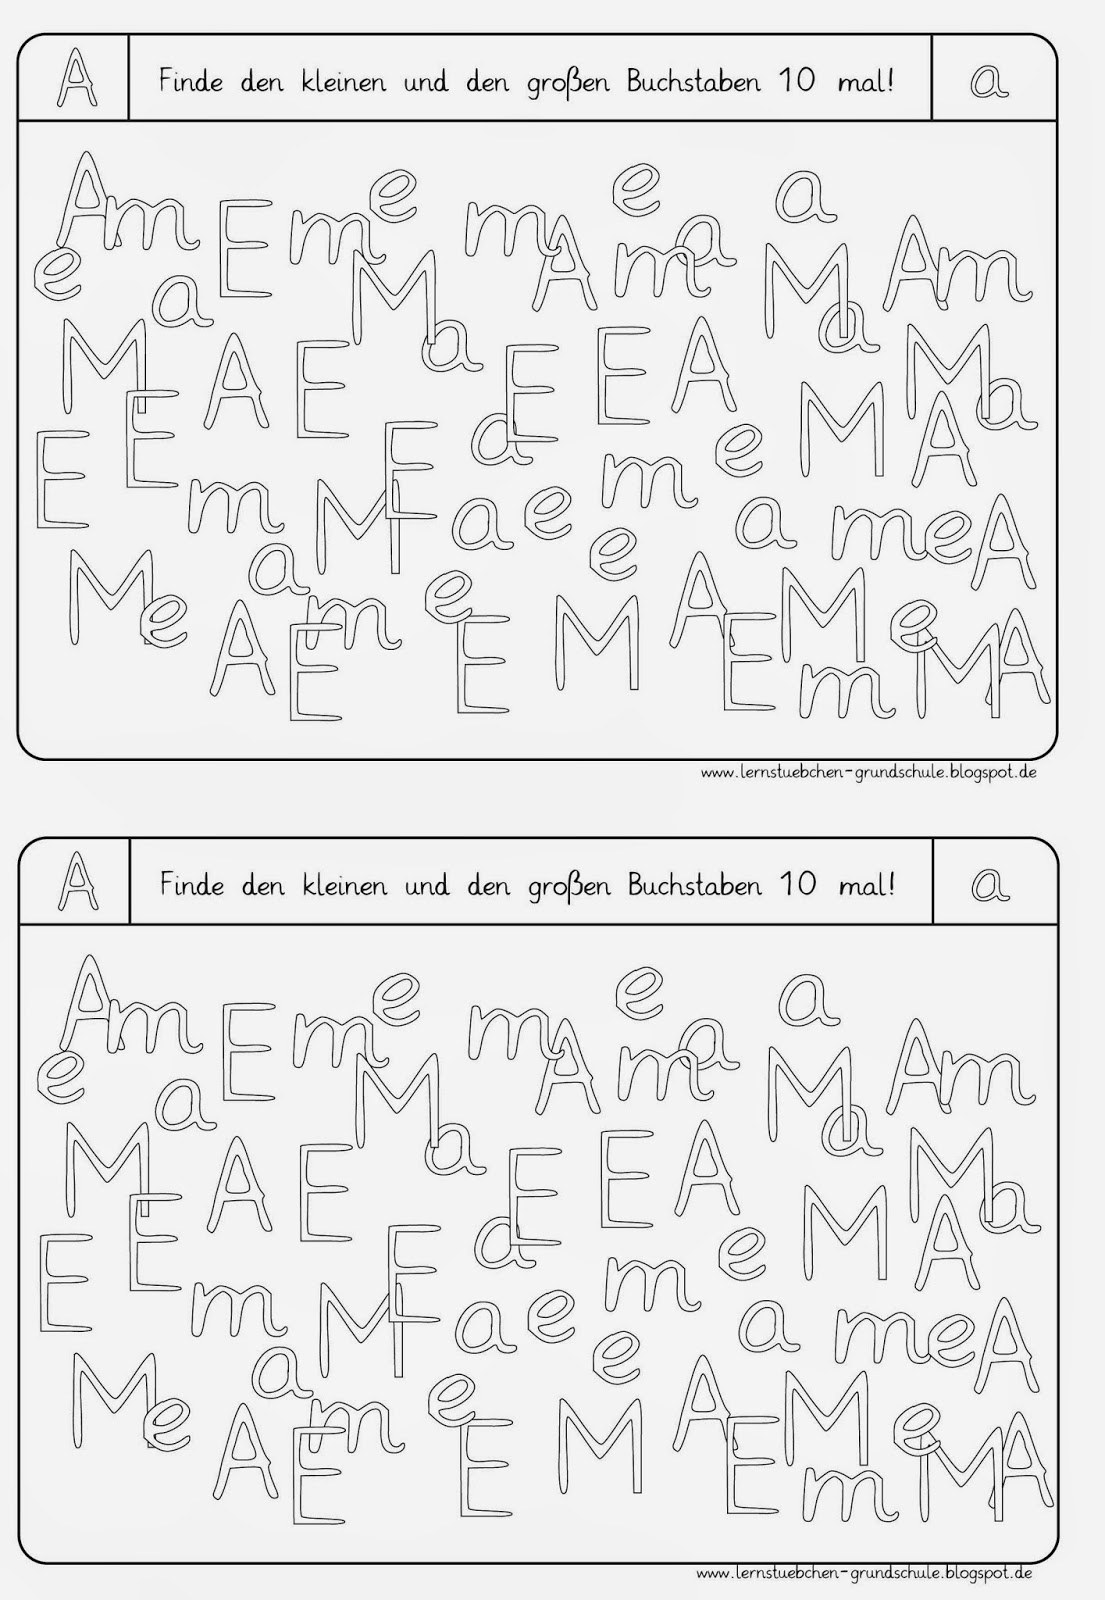 Lernstübchen: Arbeitsblätter zum Erkennen der Buchstaben (2)